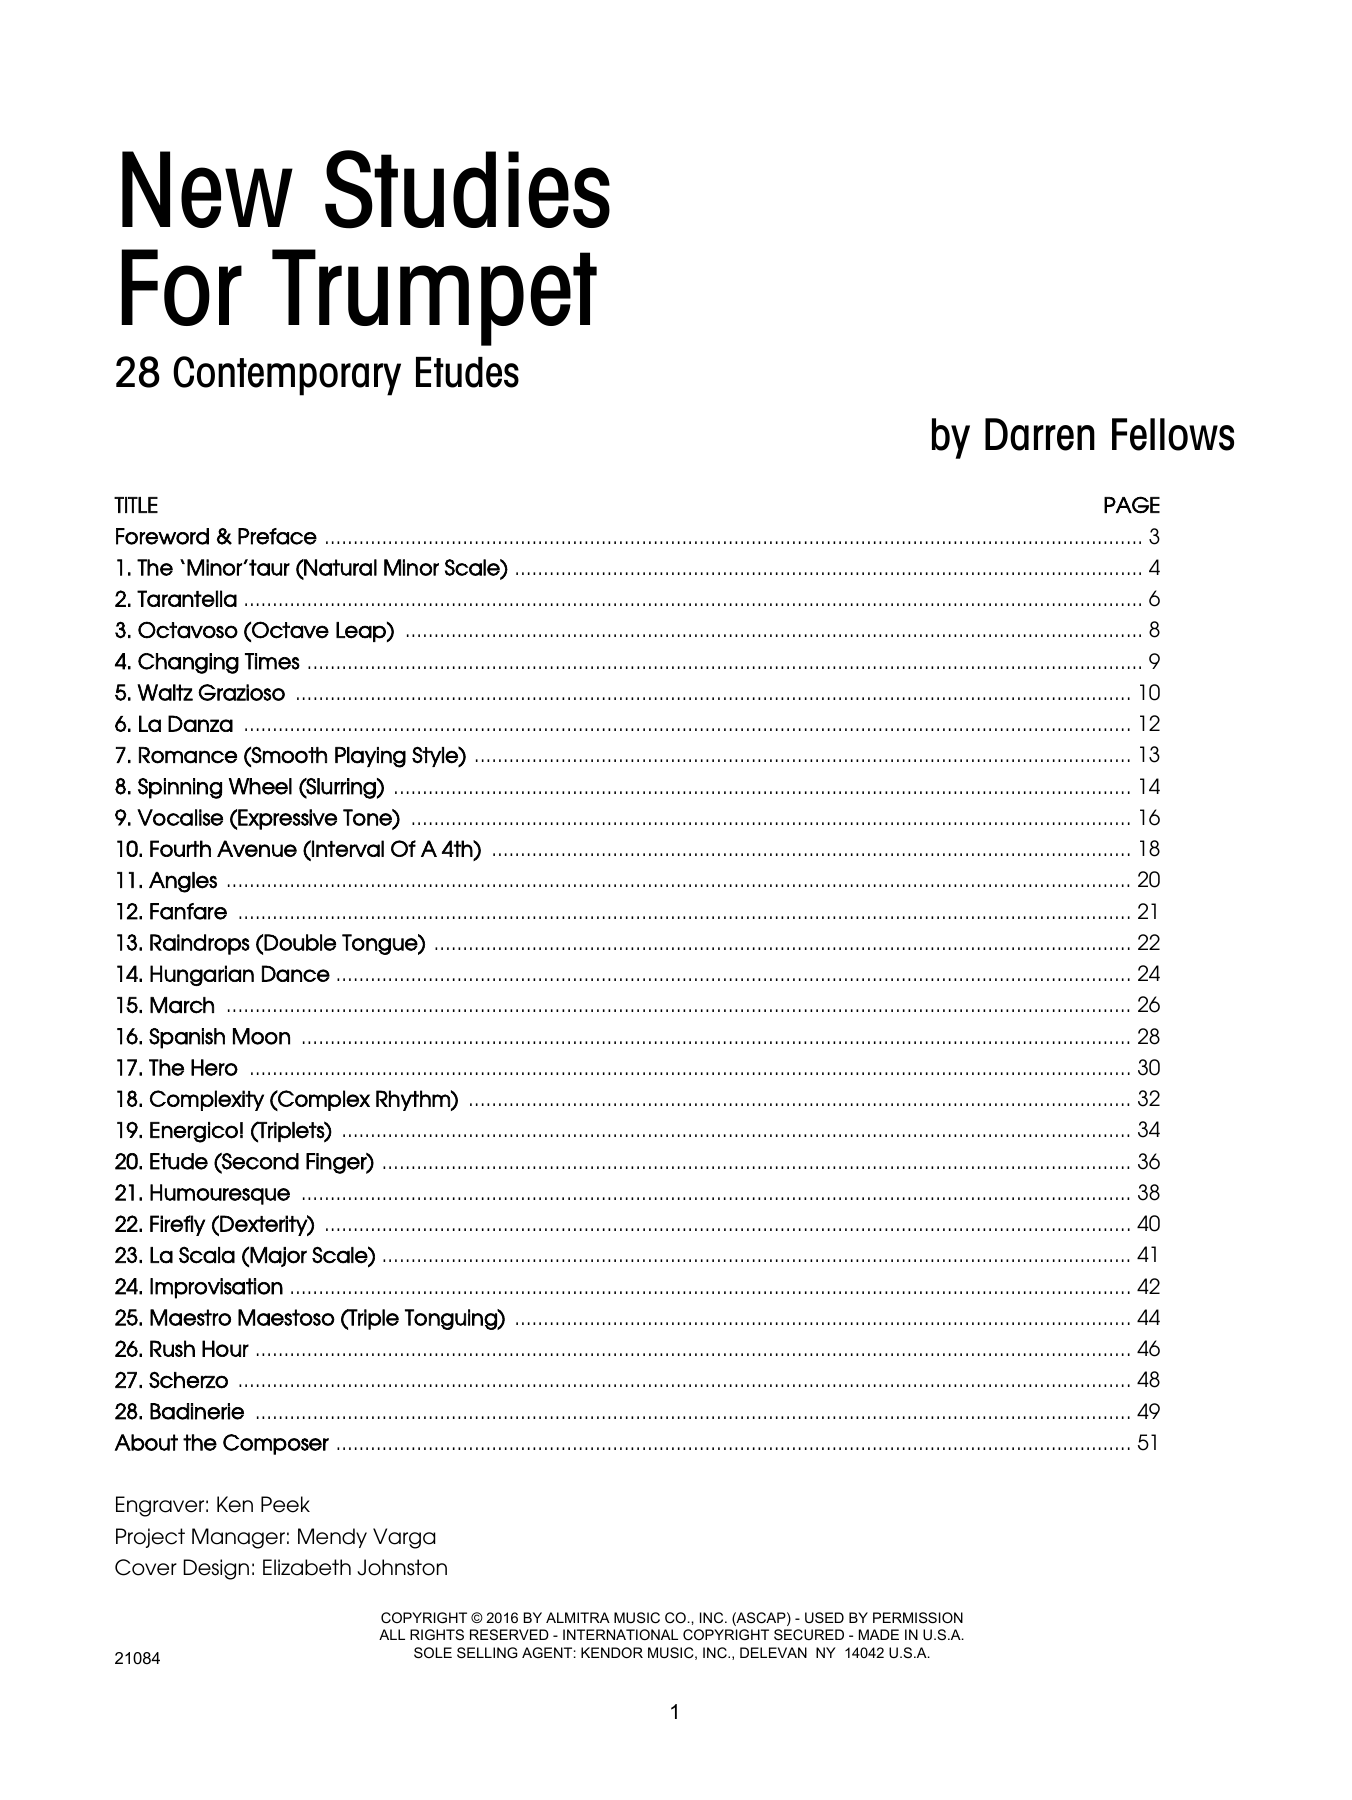 New Studies For Trumpet, 28 Contemporary Etudes (Brass Solo) von Darren Fellows